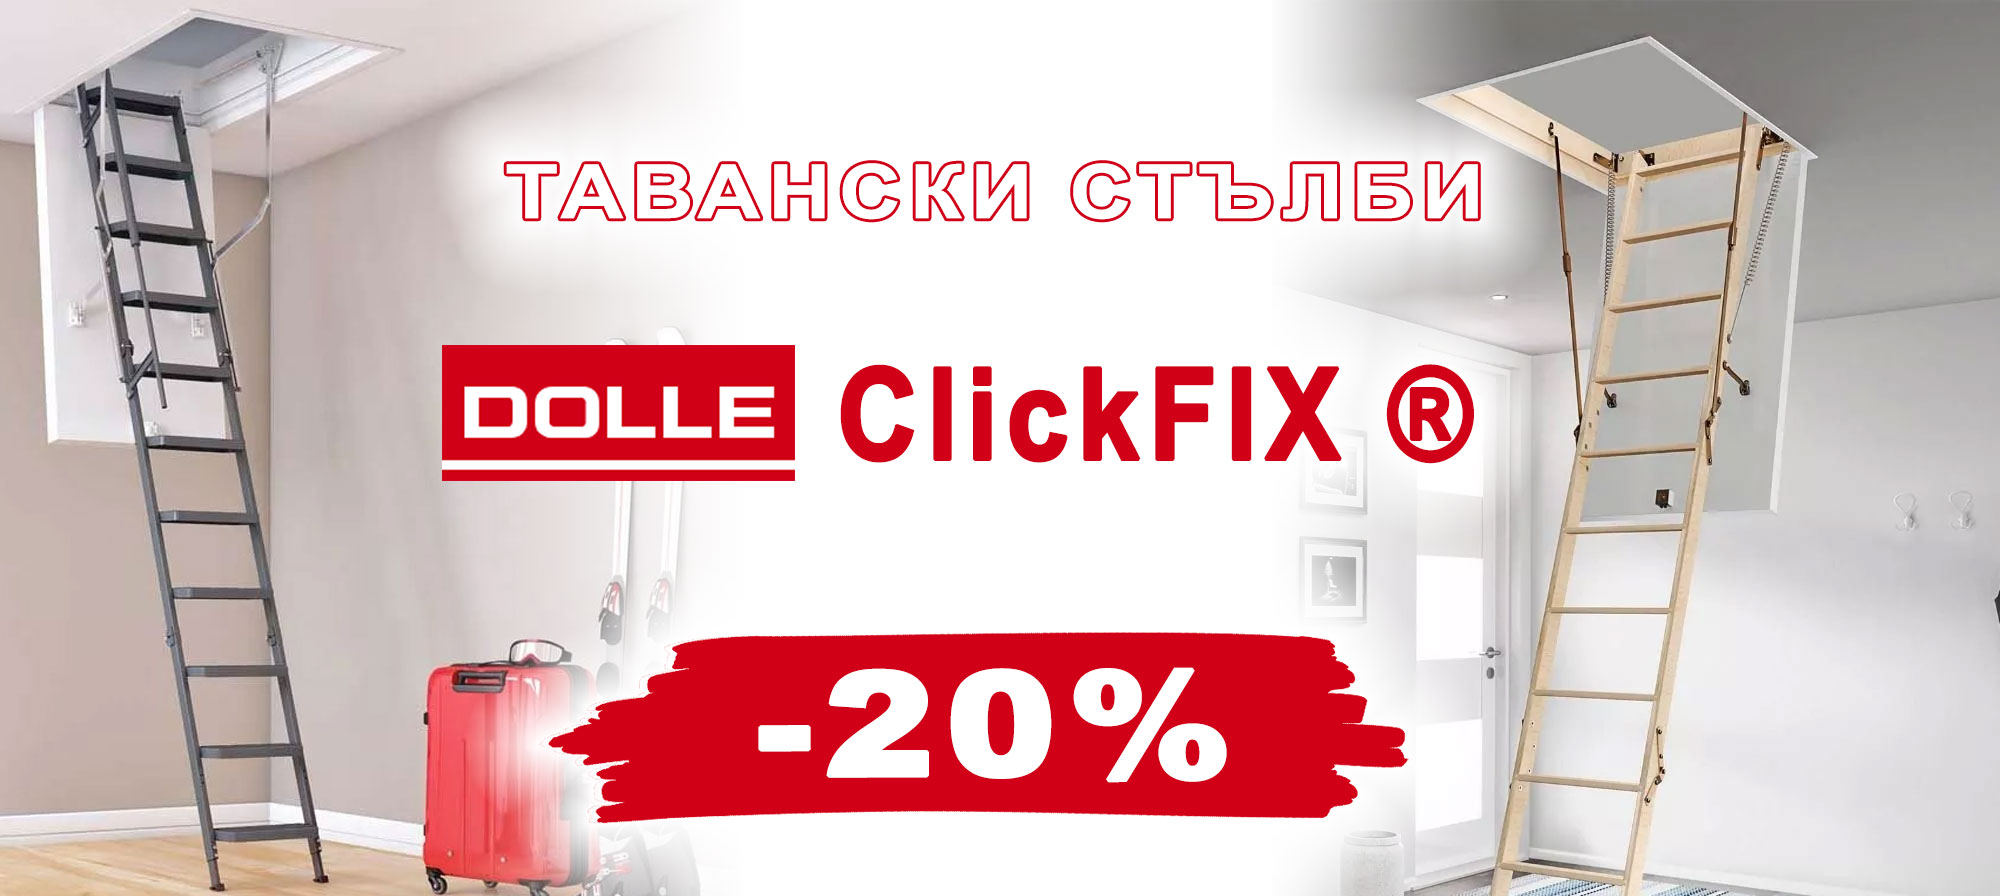 Тавански стълби DOLLE ClickFIX ® с 20% отстъпка